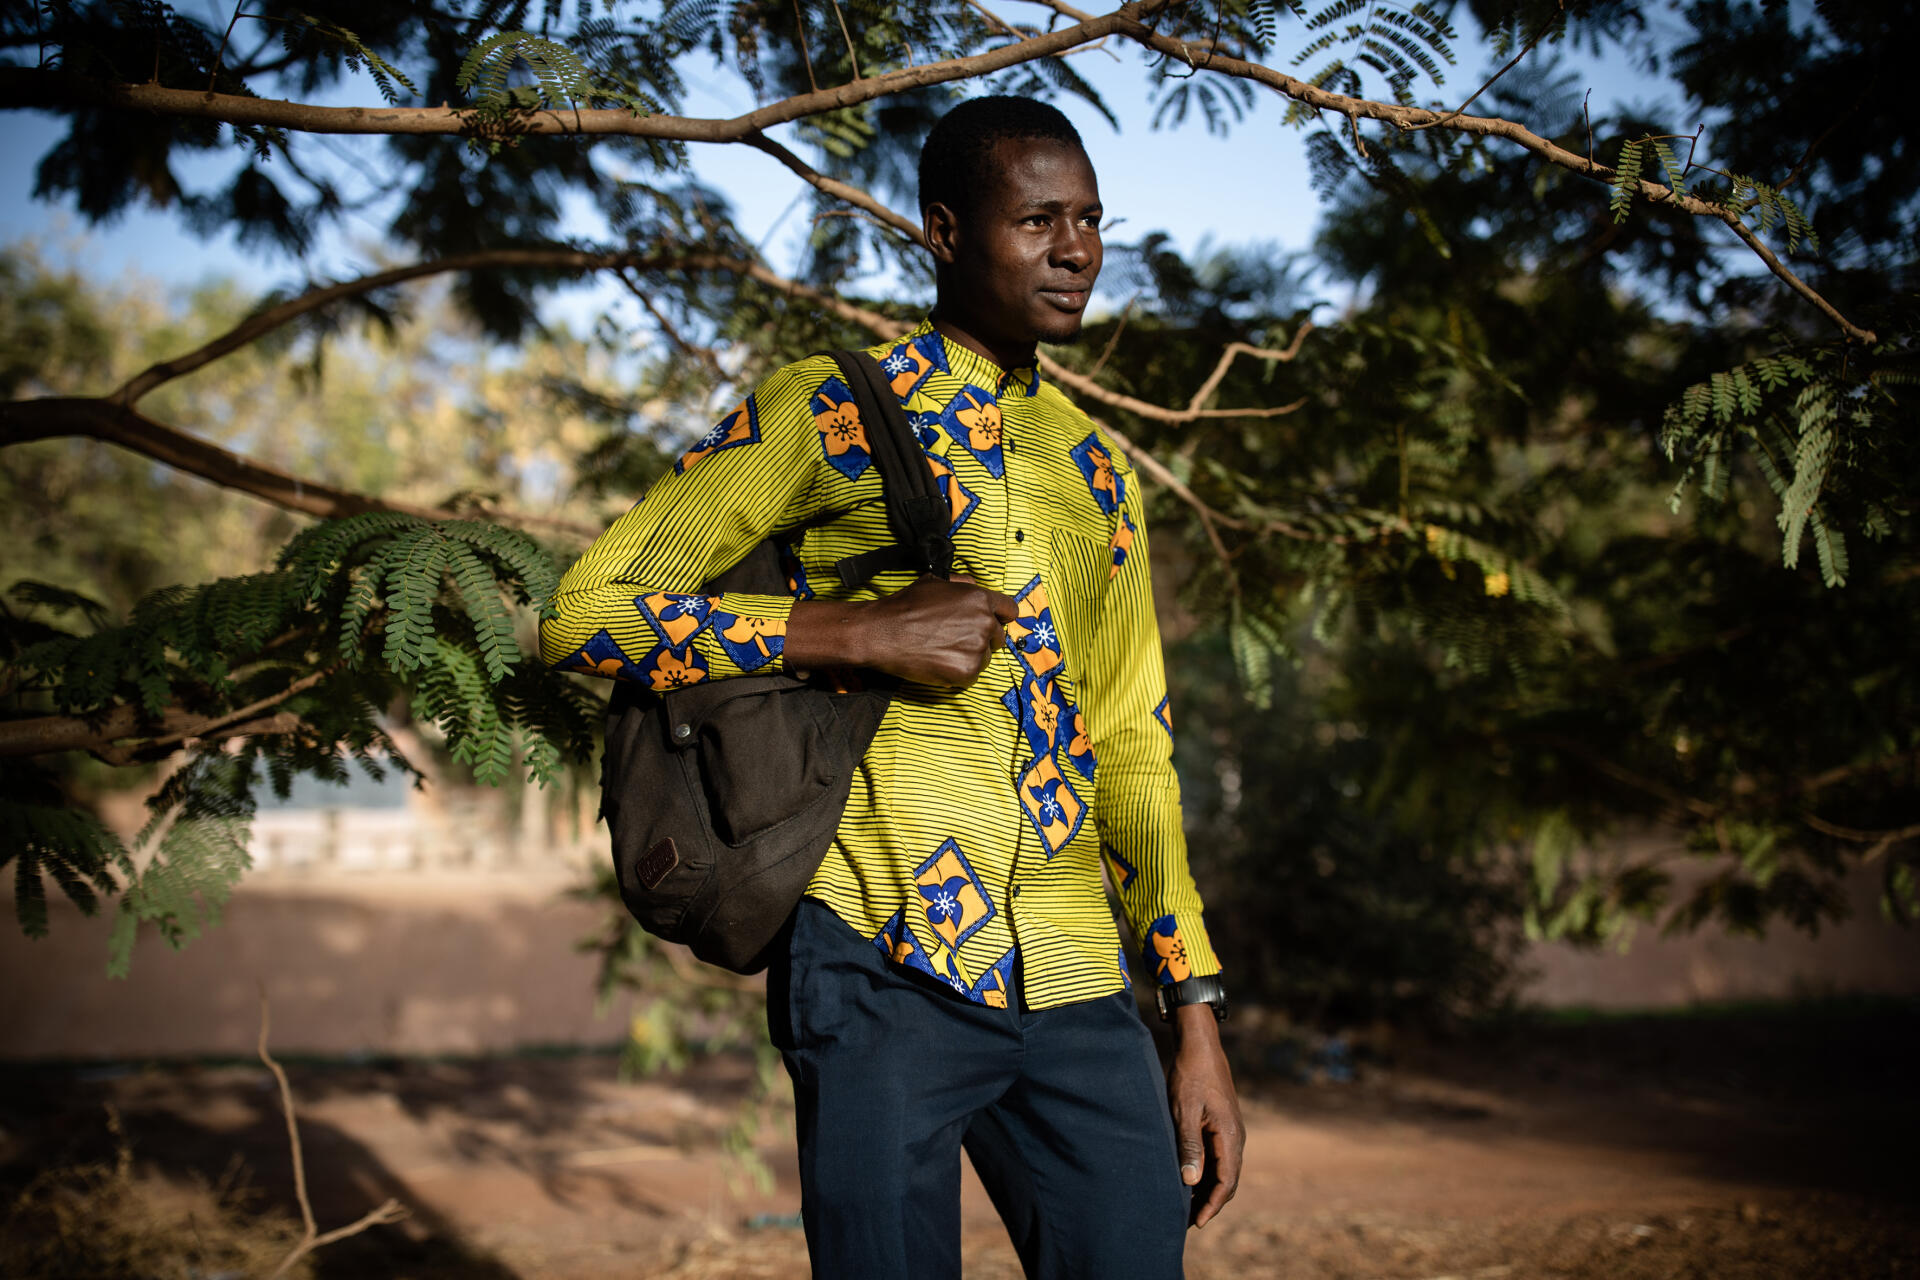 Hati Ouedraogo, étudiant et gardien de nuit, au campus universitaire de Ouagadougou le 21 janvier 2022. Hati a grandi dans le nord du Burkina Faso et vit à Kamboinsin, à 45 minutes de vélo de l'université Joseph-Ki-Zerbo.